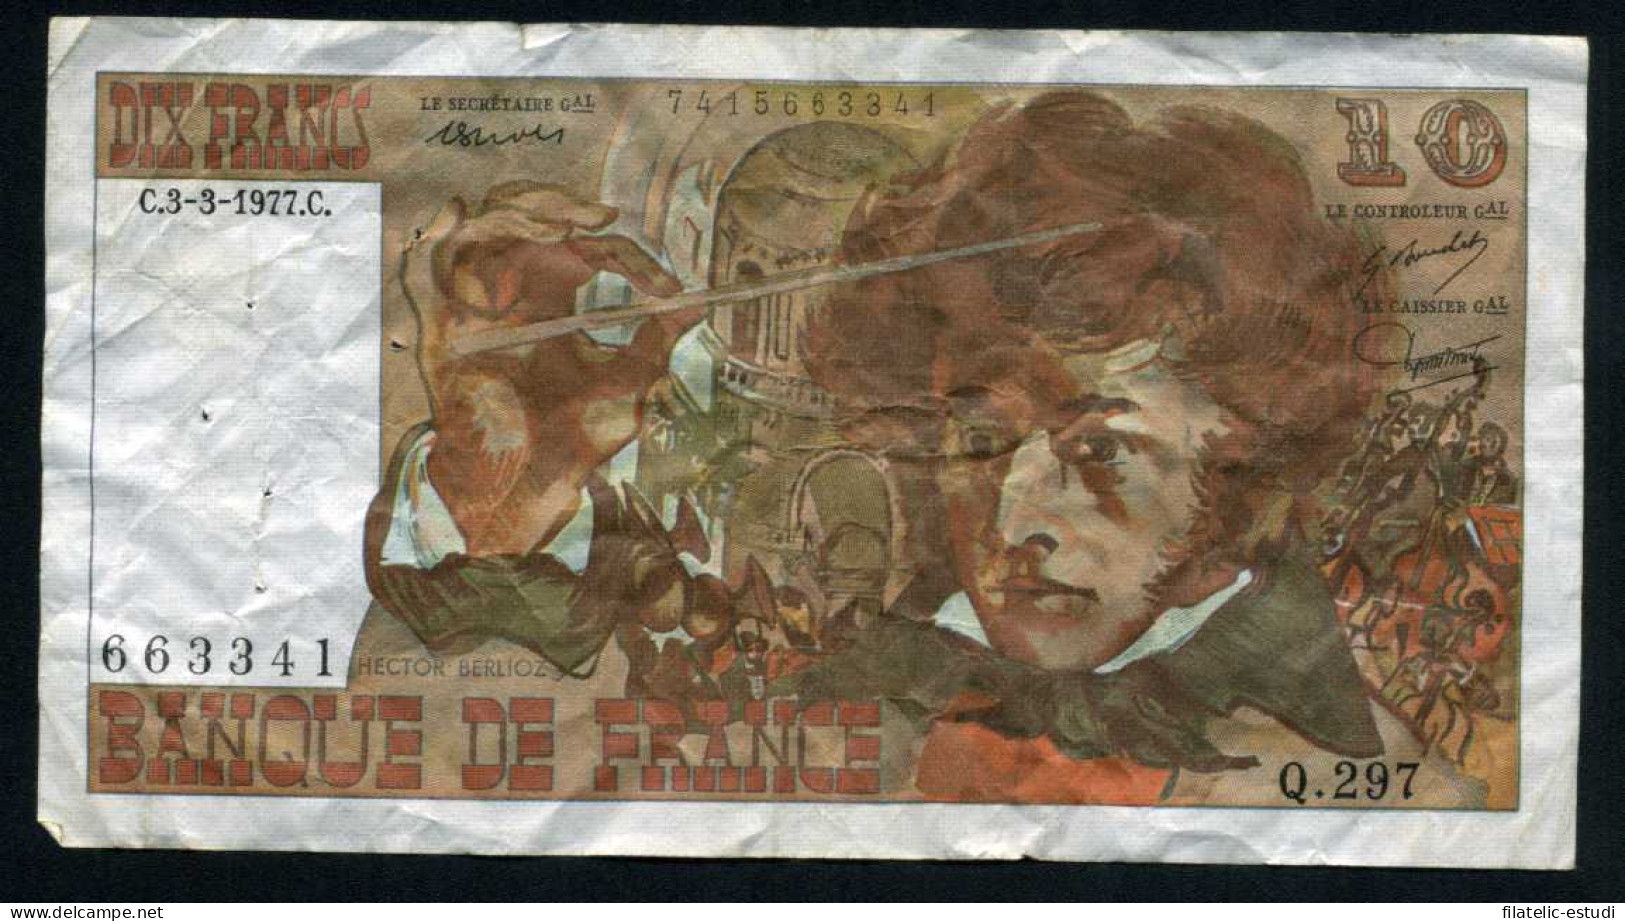 Francia 10 Francos 1977 Billete Banknote Circulado Puntos De Aguja - Autres - Europe